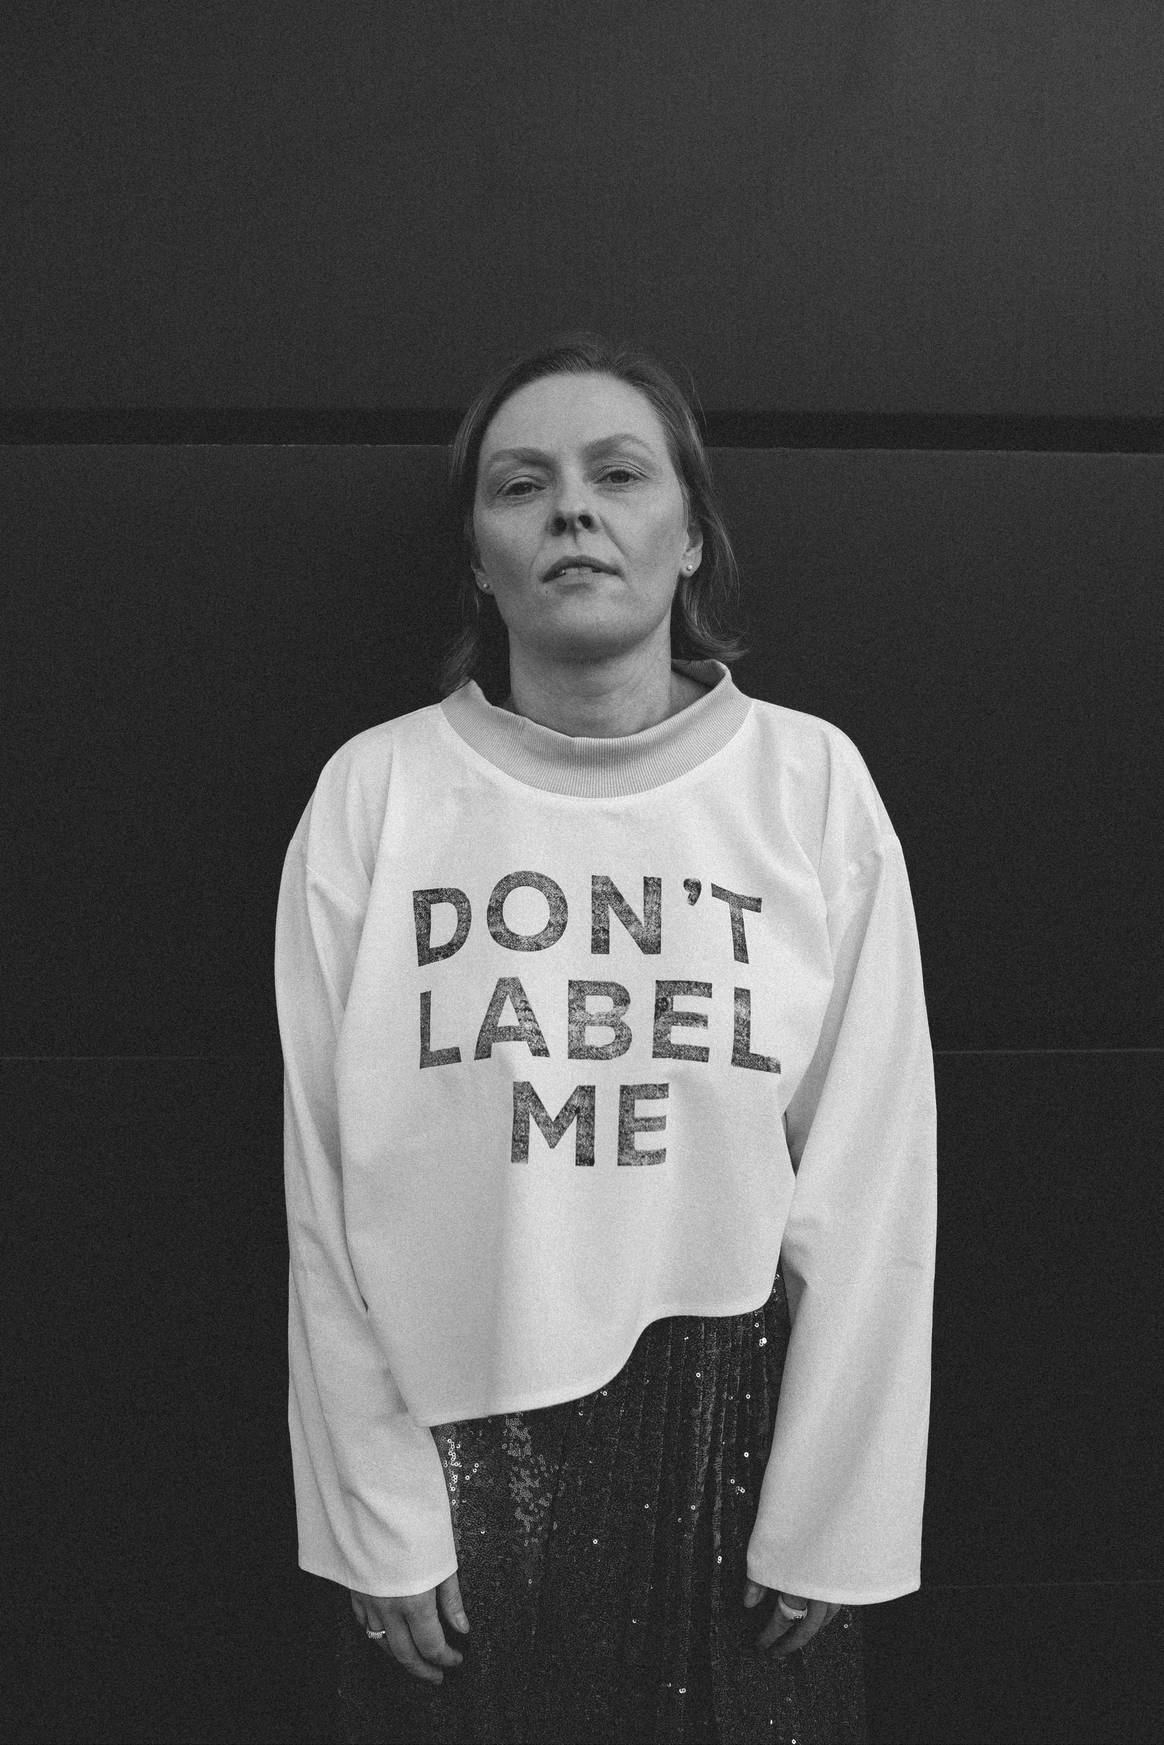 Sarah Schlemmer voor haar campagne 'Don't Label Me'. Foto:
Sarah Schlemmer